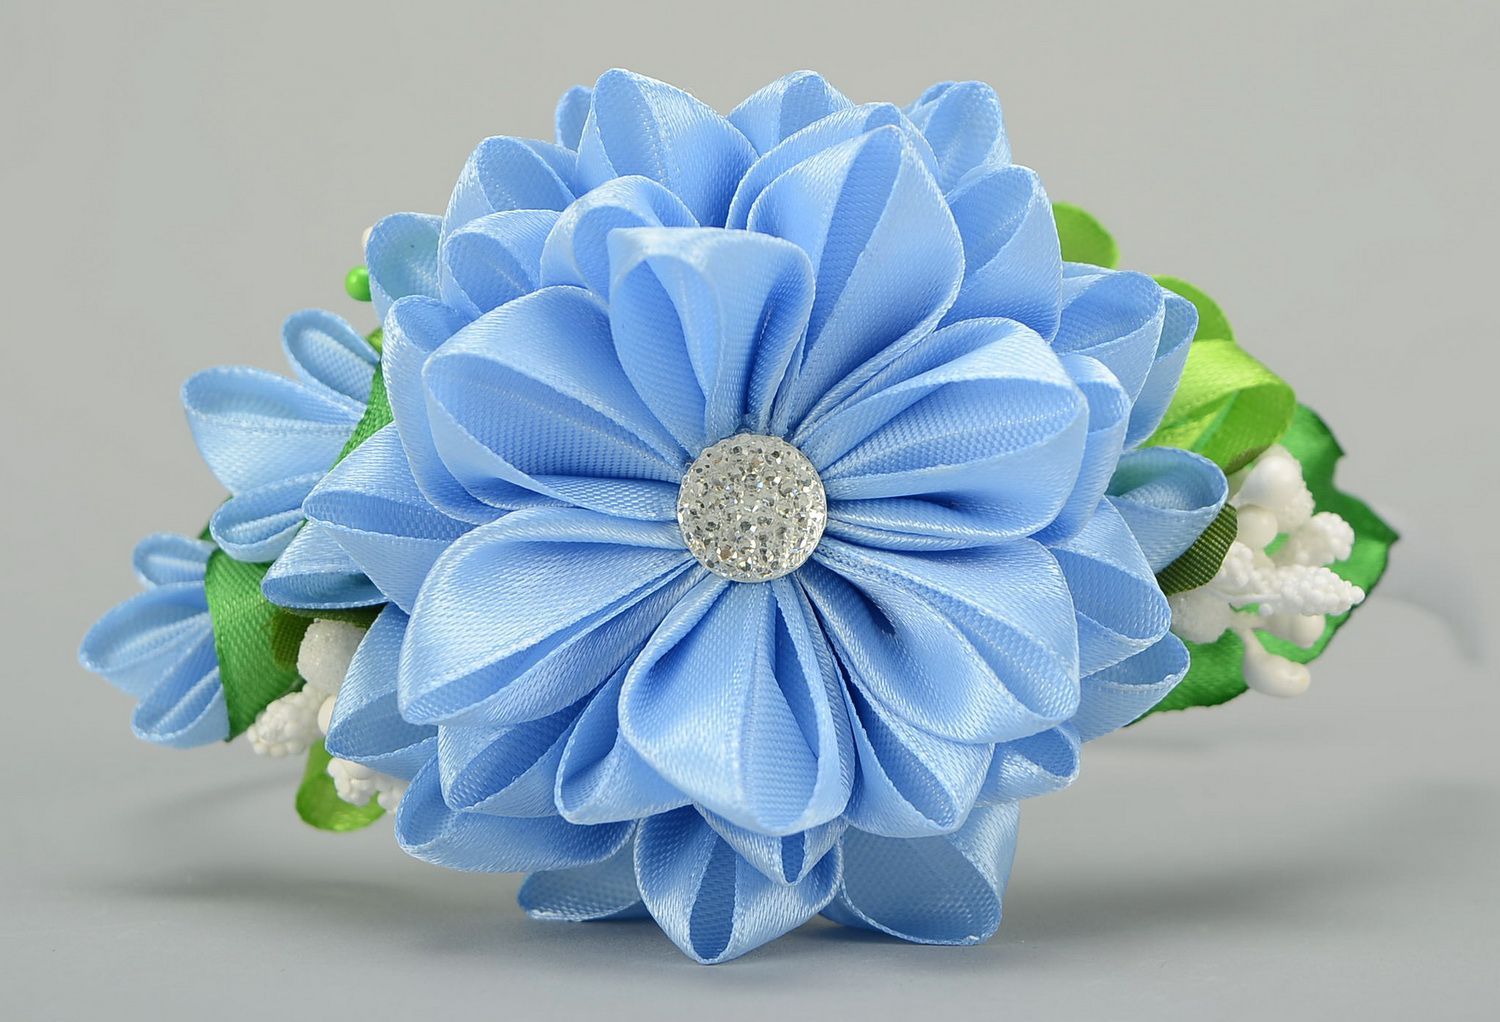 Aro de cabelo, coroa de flores na cabeça com flor azul de cetim foto 3